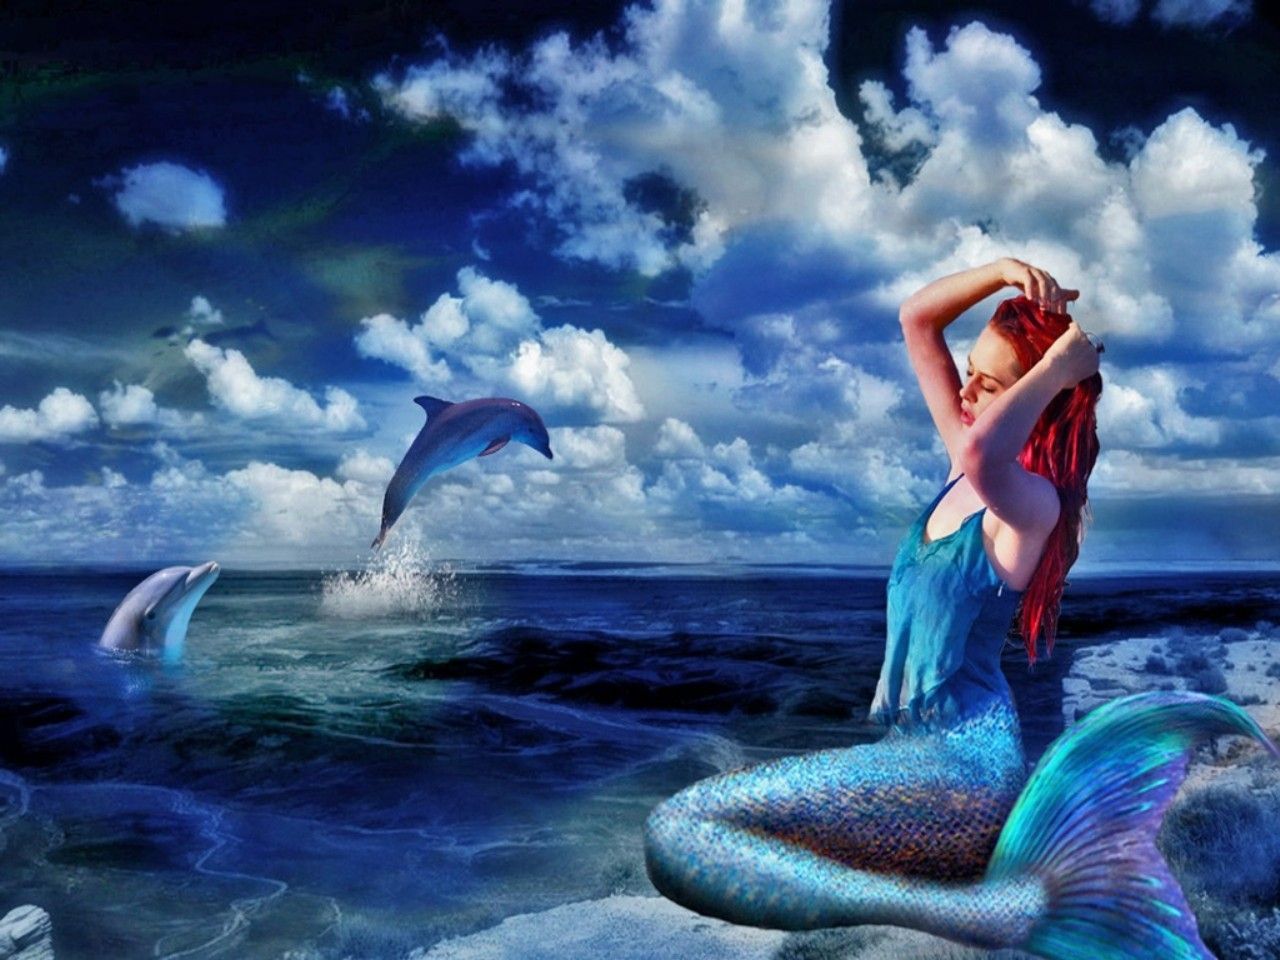 Mermaid wallpaper background, Mermaid .com